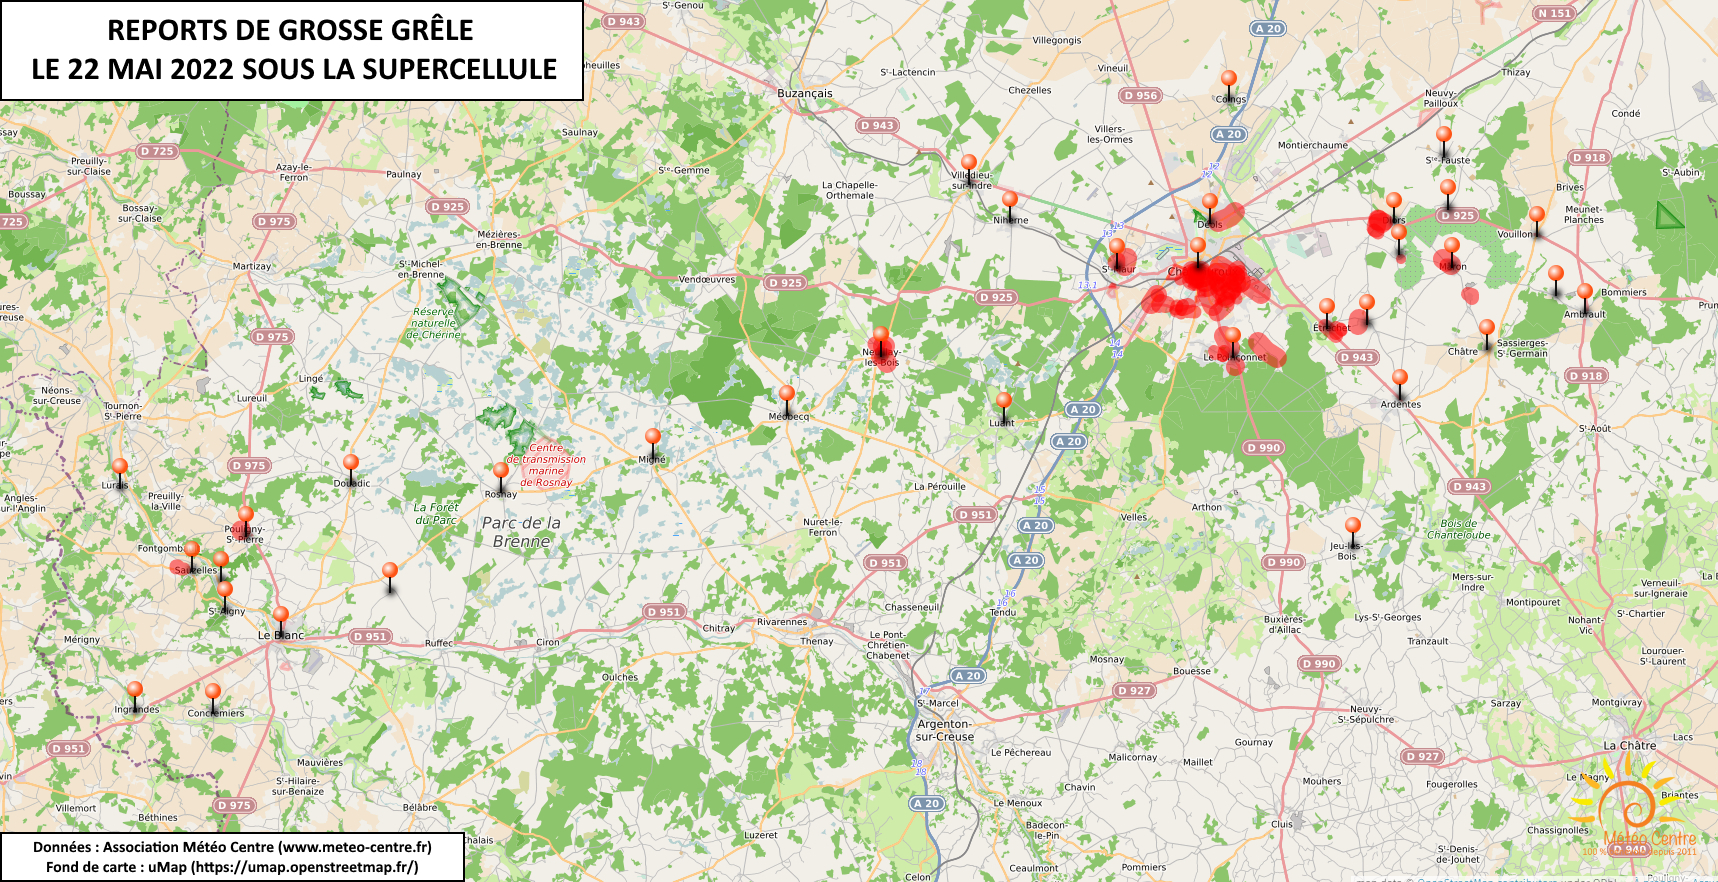 Reports de grosse grêle dans la nuit du 22 au 23 mai 2022, dans l'Indre (copyright : Association Météo Centre).